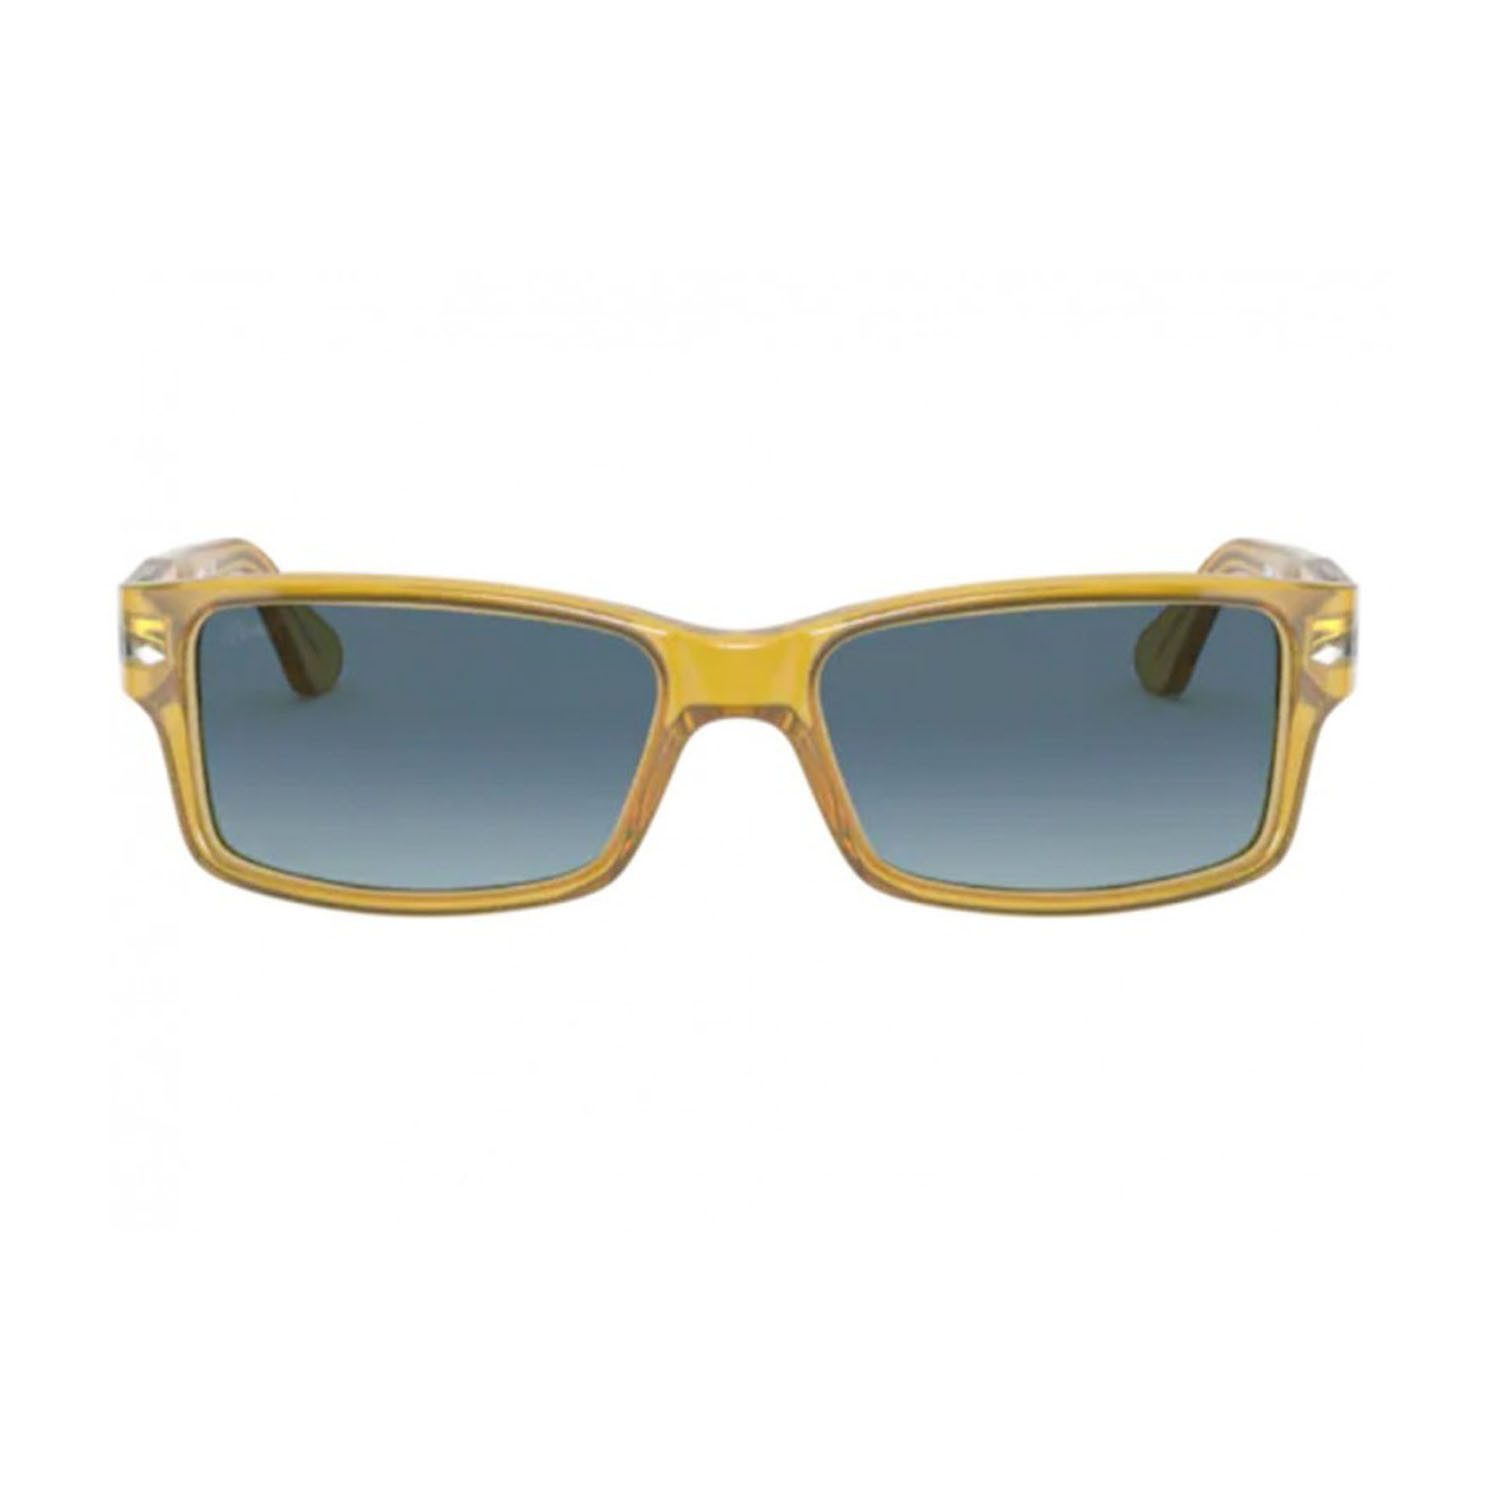 Men's Rectangle Sunglasses // Transparent Honey Brown + Gradient Blue ...